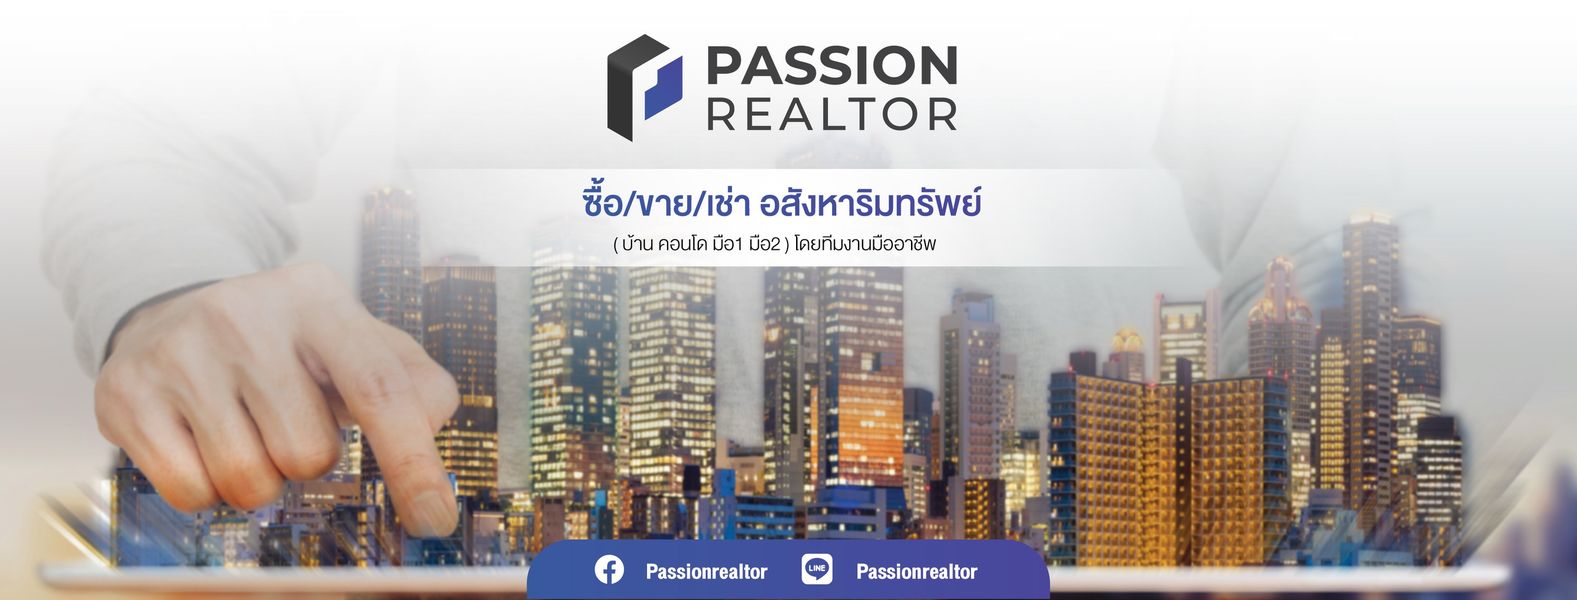 Passion Realtor ผู้ให้บริการซื้อ ขาย เช่า อสังหาริมทรัพย์